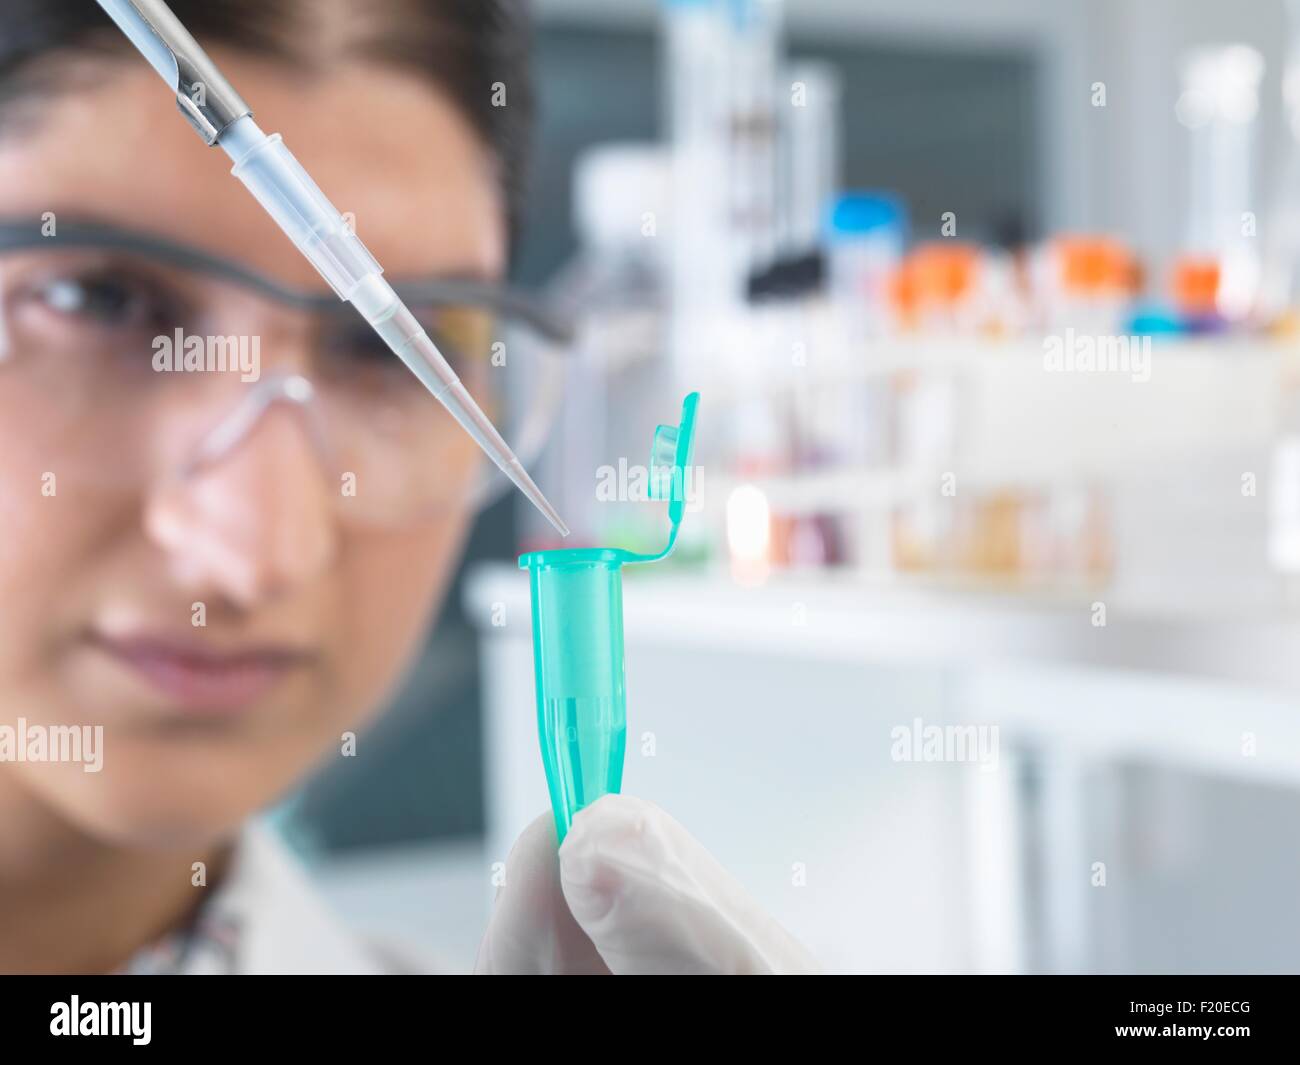 Investigadora pippetting muestra en tubo eppendorf para análisis en laboratorio Foto de stock